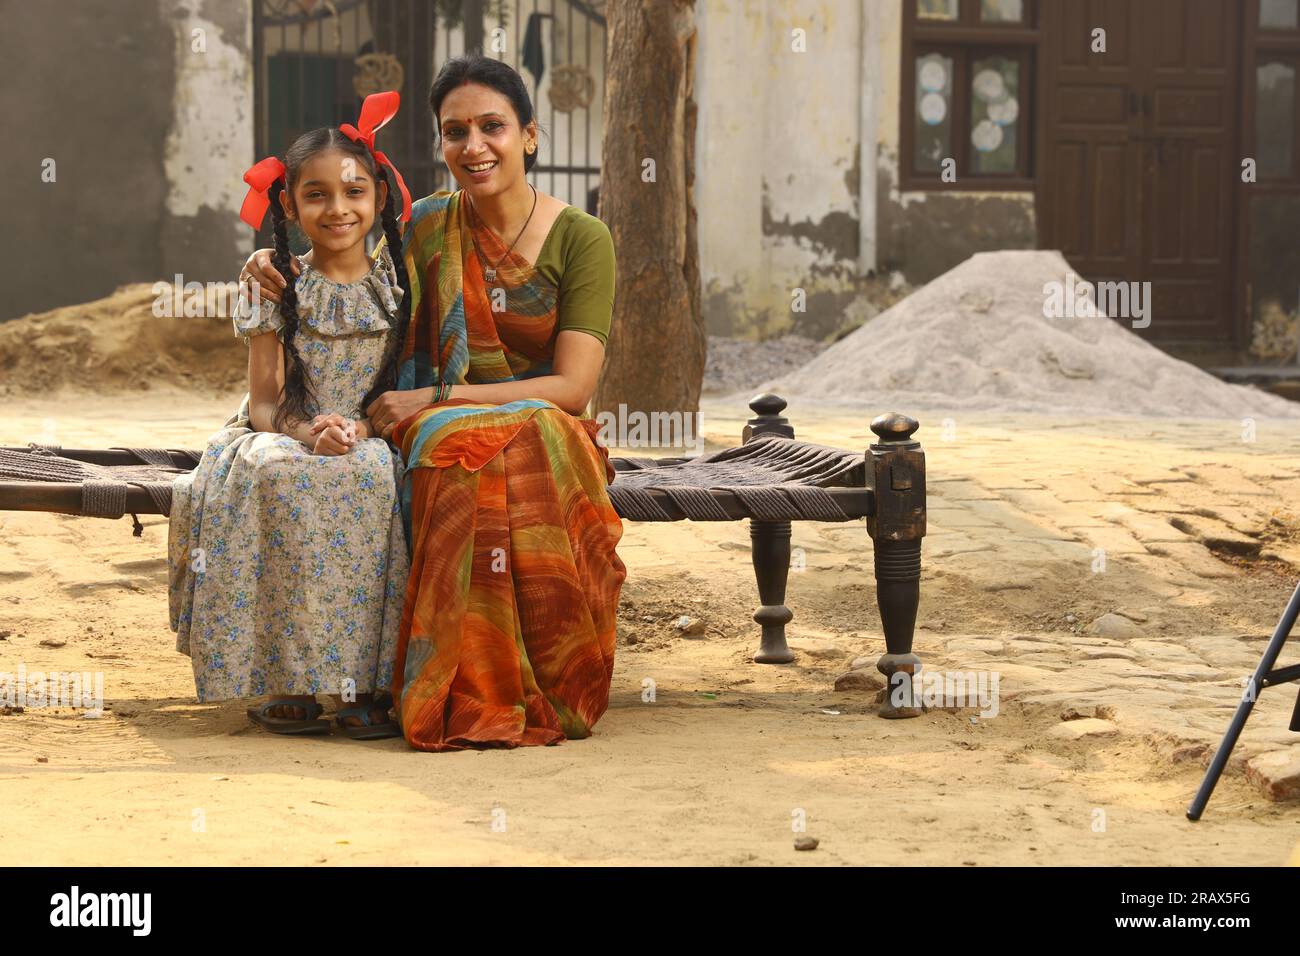 Mamma felice e figlie sedute insieme sorridendo sulla culla fuori casa, davanti al cortile. Madre in un bel sari. Cultura indiana. India rurale. Foto Stock